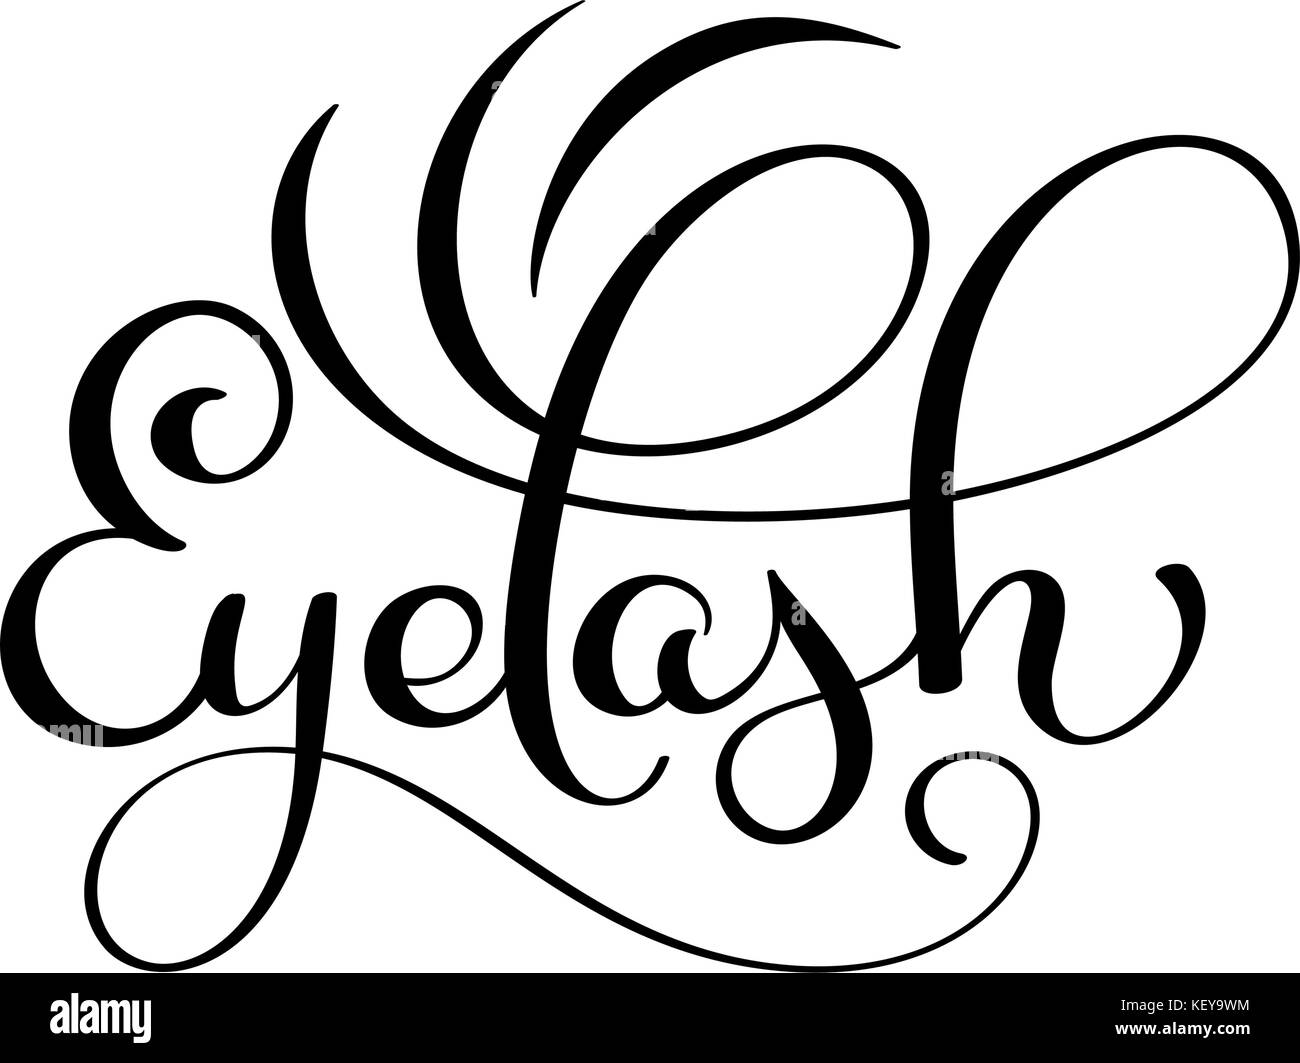 Handschriftliche Kalligraphie Schrift Wort eyelash. Vector Illustration auf weißem Hintergrund Stock Vektor